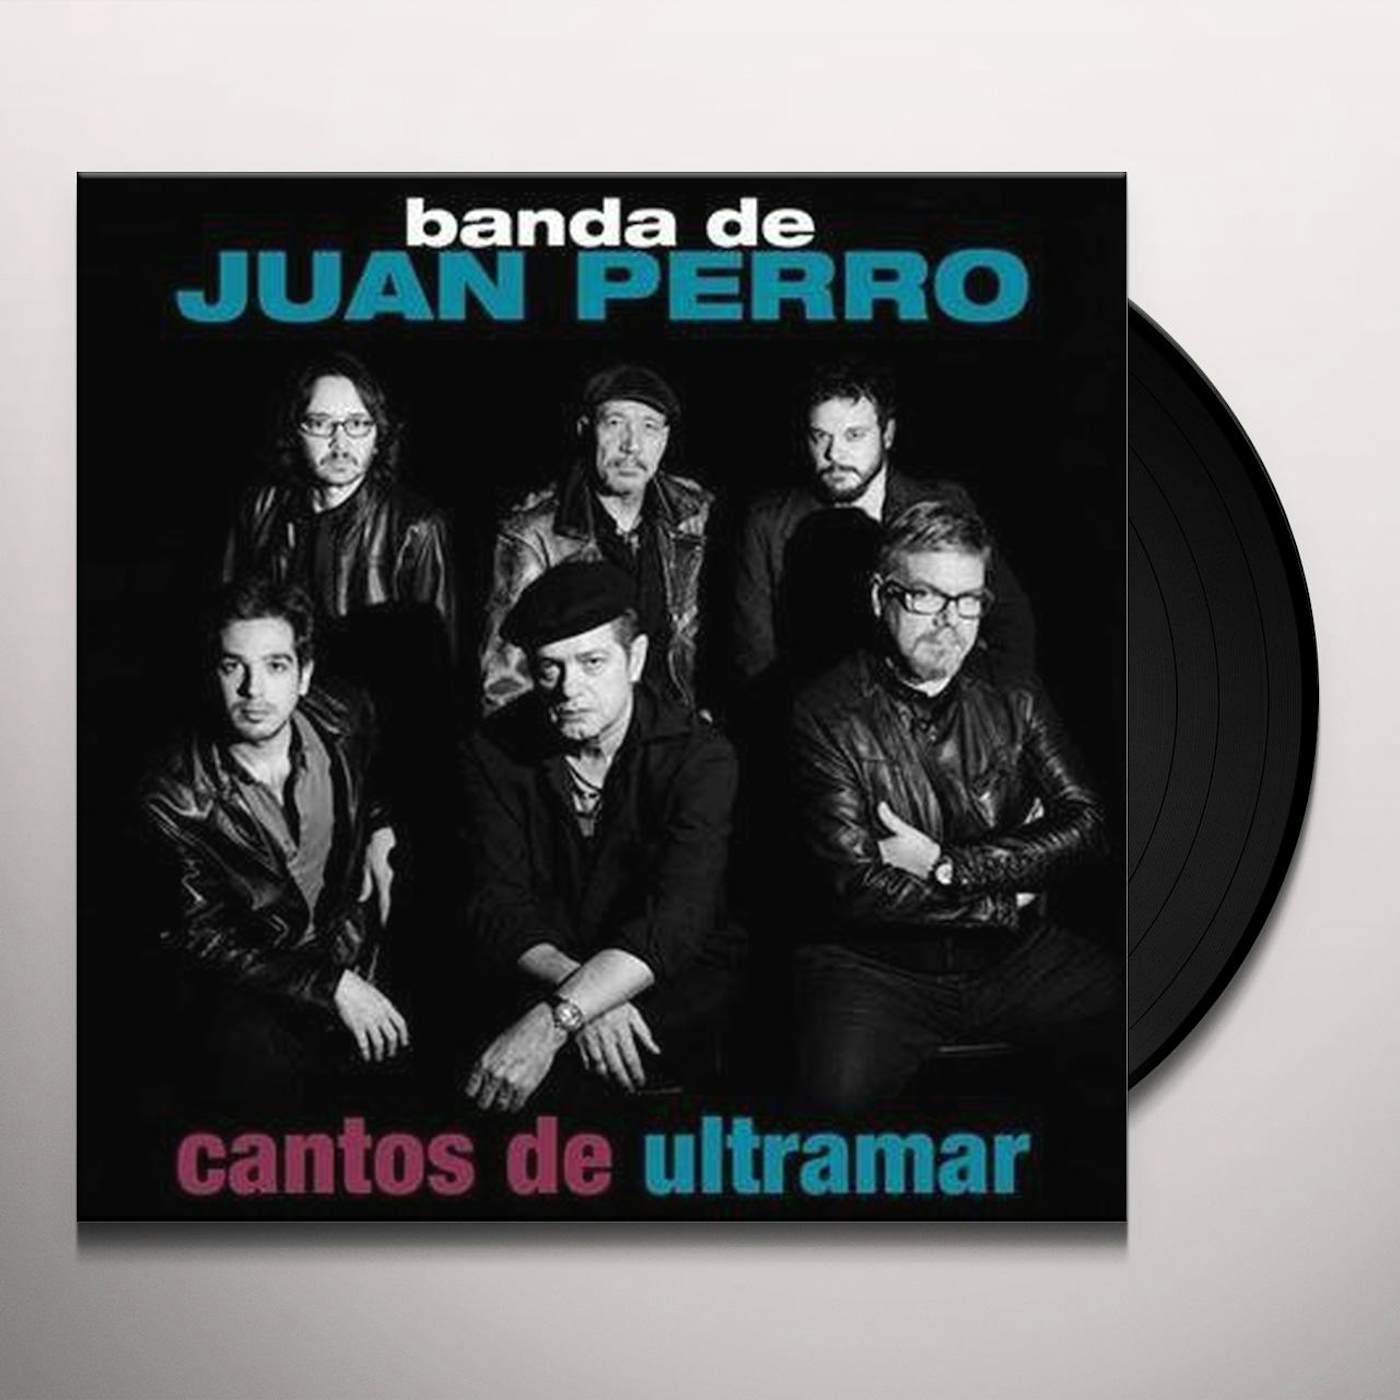 Juan Perro Cantos de ultramar Vinyl Record